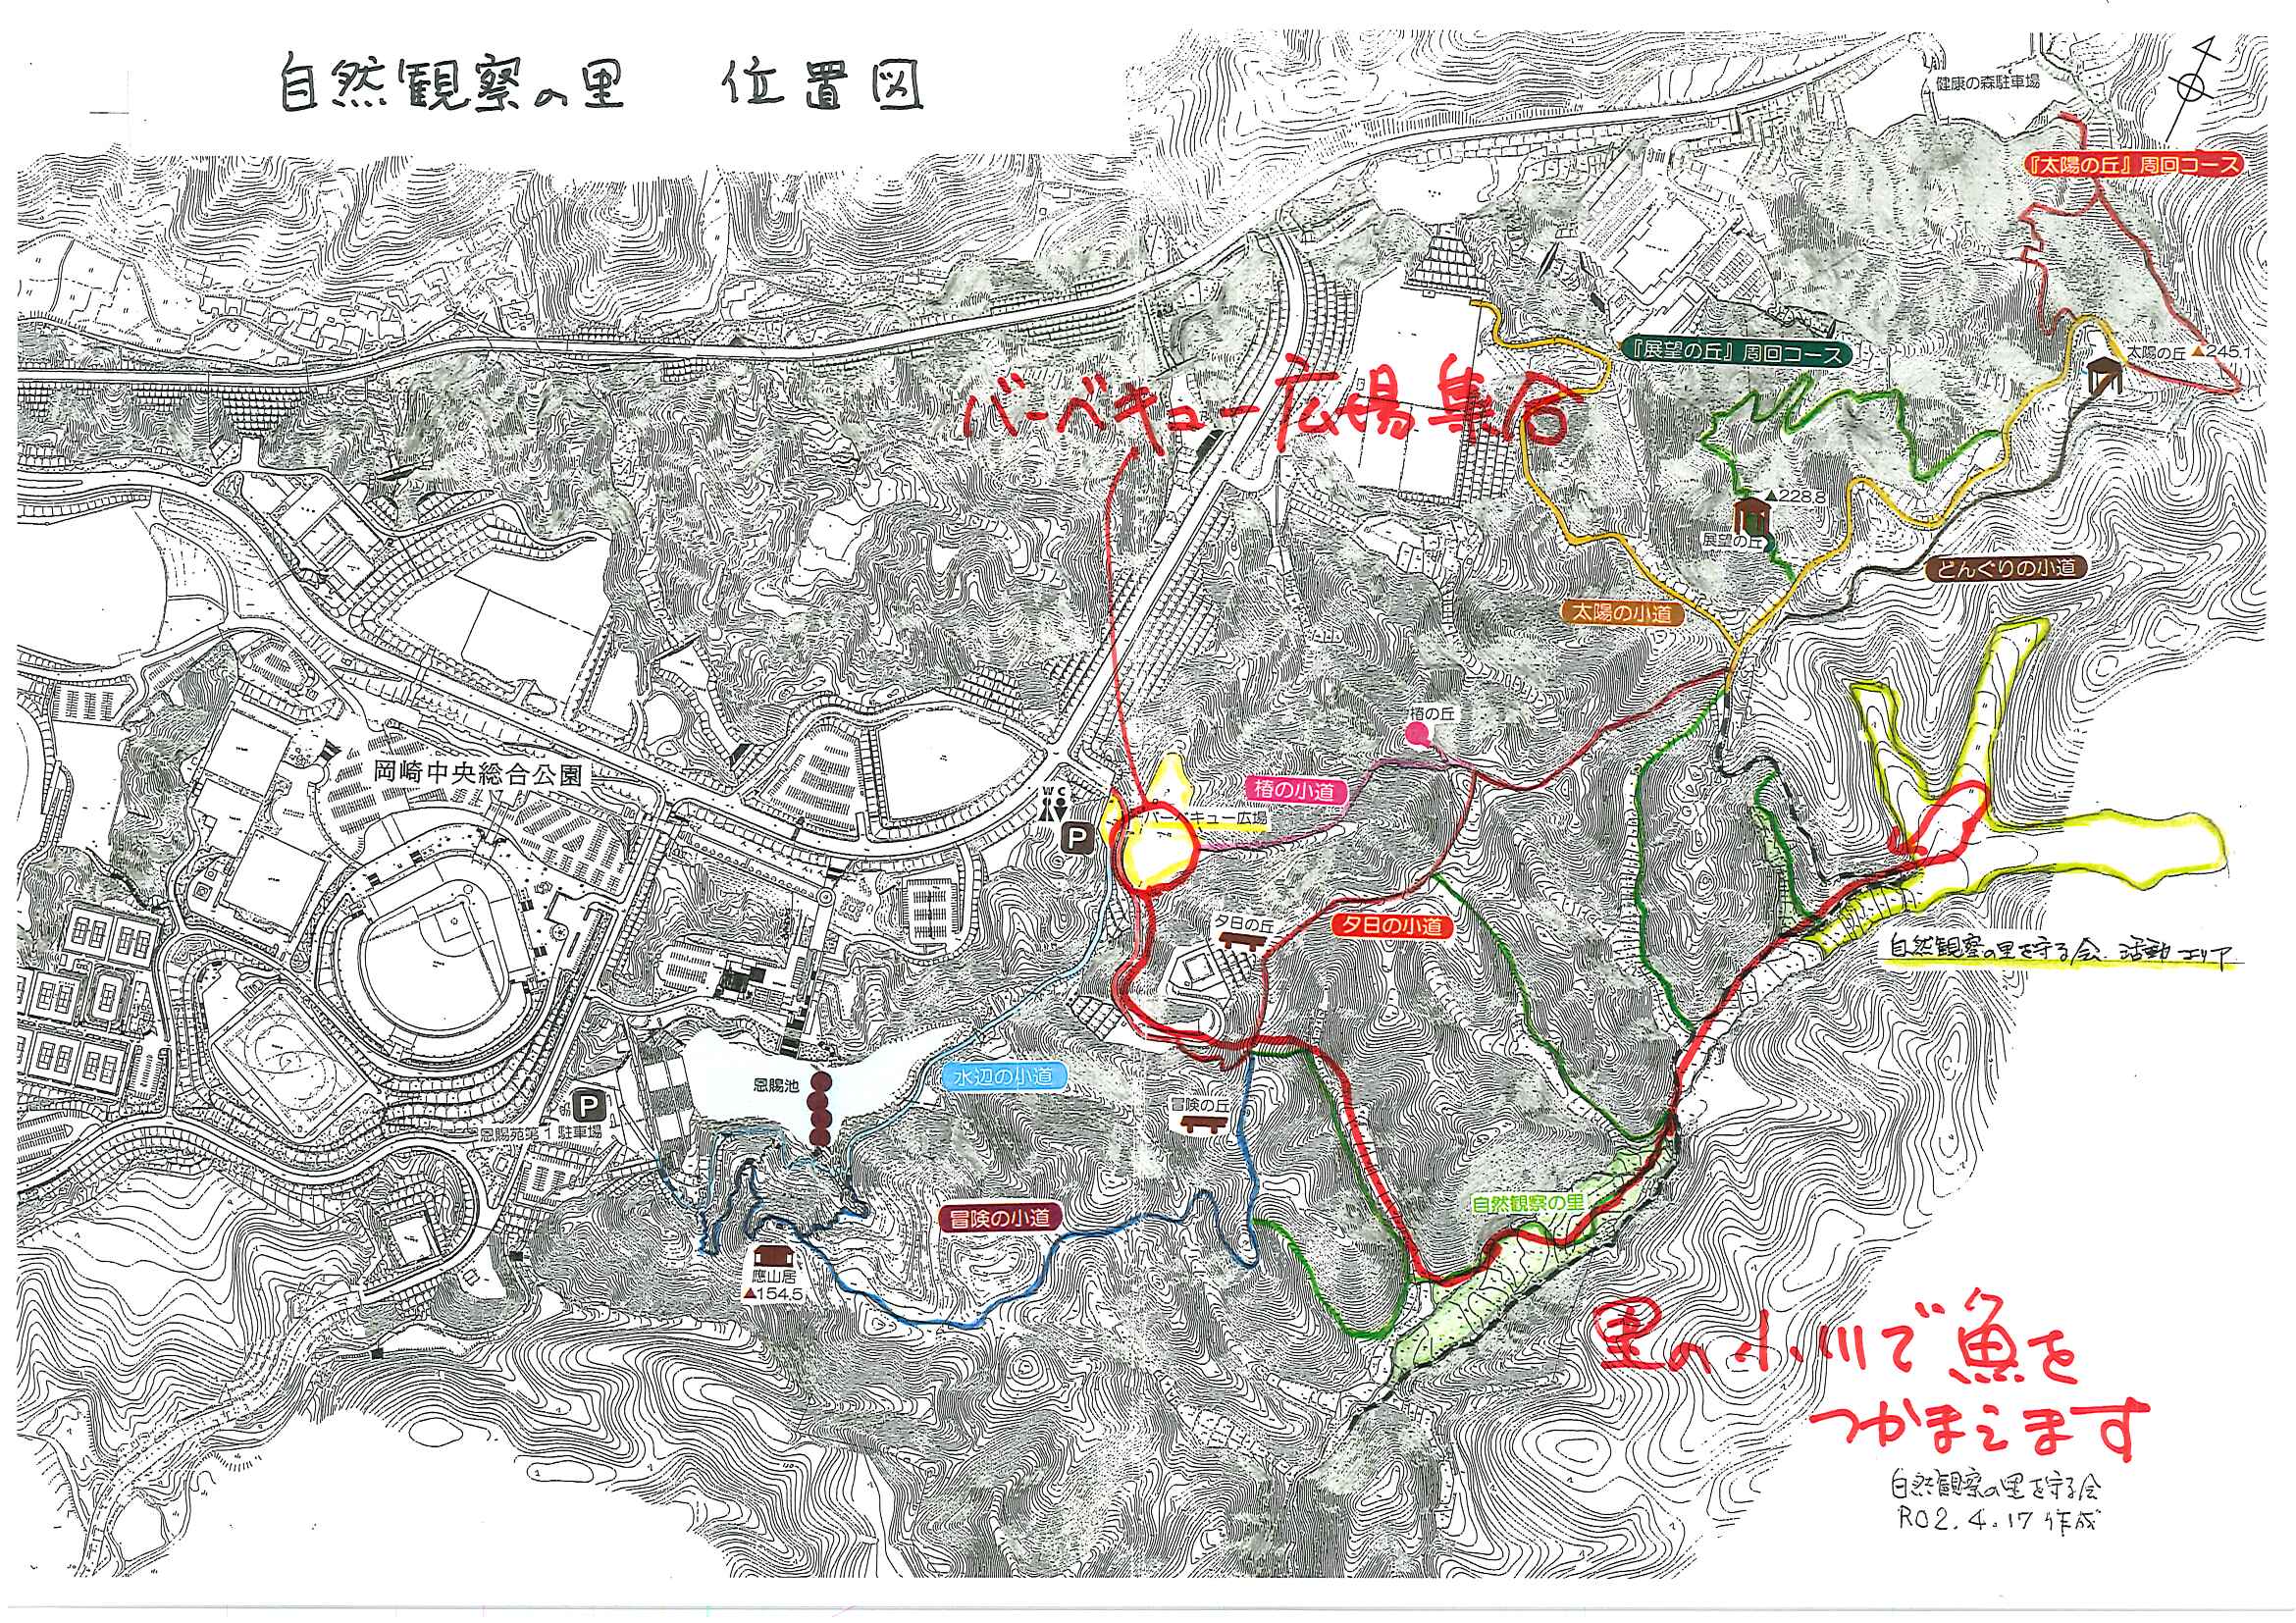 岡崎中央総合公園に隣接する自然観察の里への地図